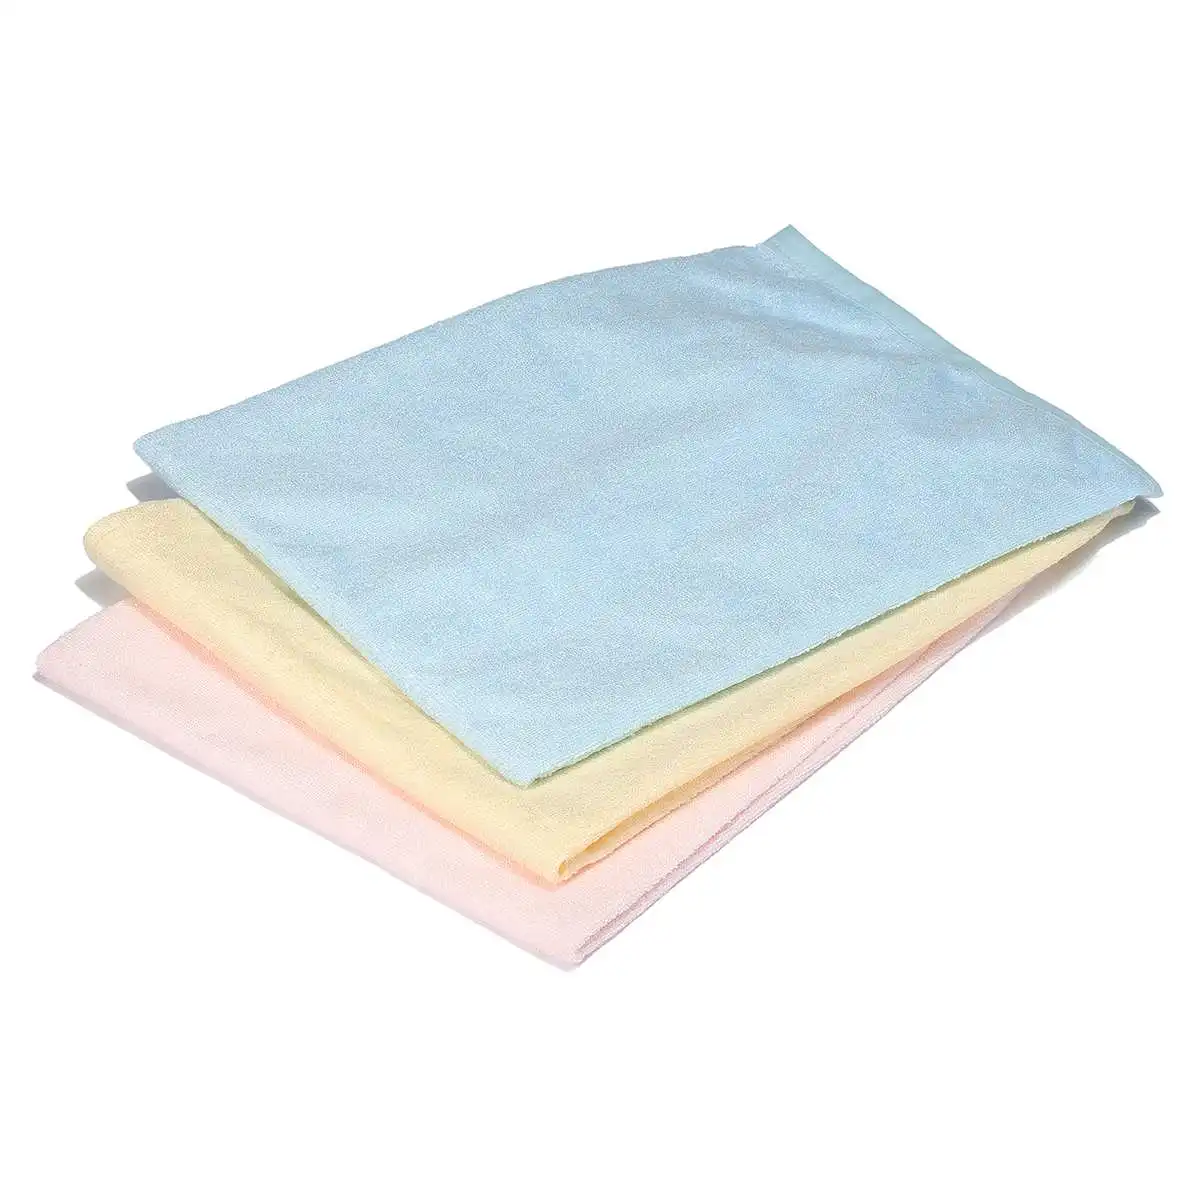 Водонепроницаемый моющийся многоразовый коврик для кровати для детей старшего возраста, матрас для промокания кровати, защита 3 цветов, 7 размеров